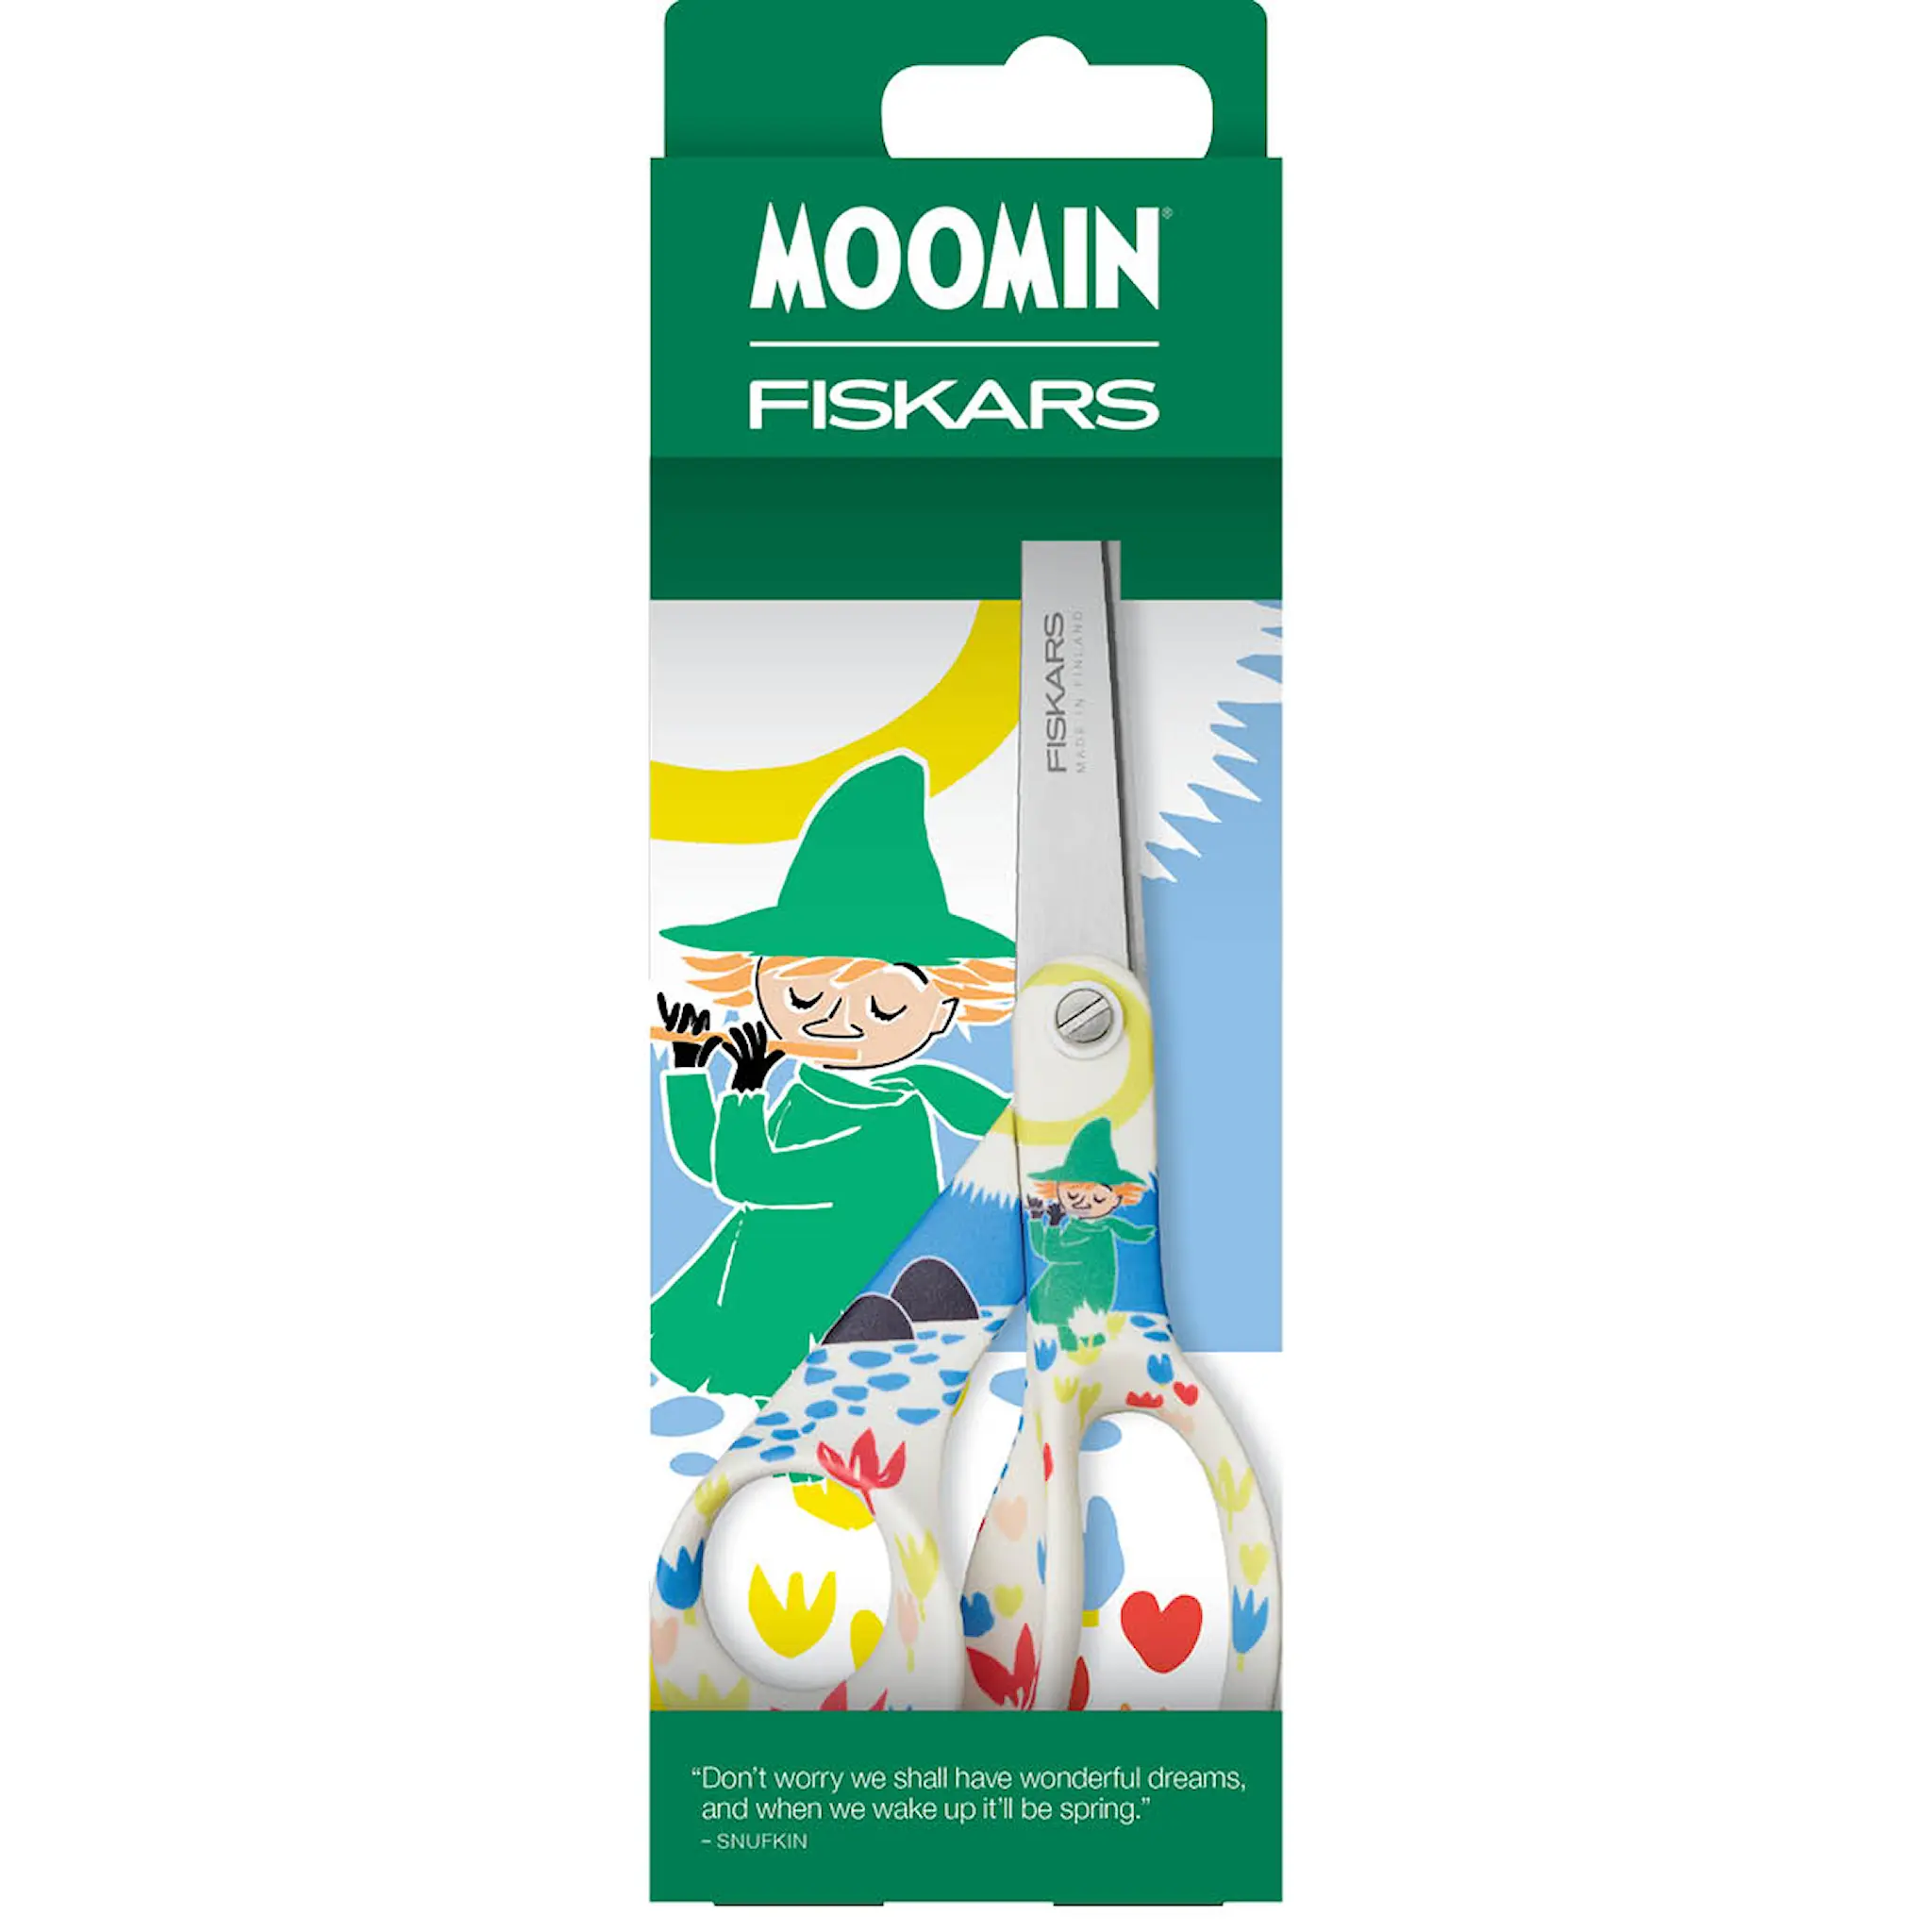 Moomin Fiskars Mumin Universalsax Snusmumriken 21 cm